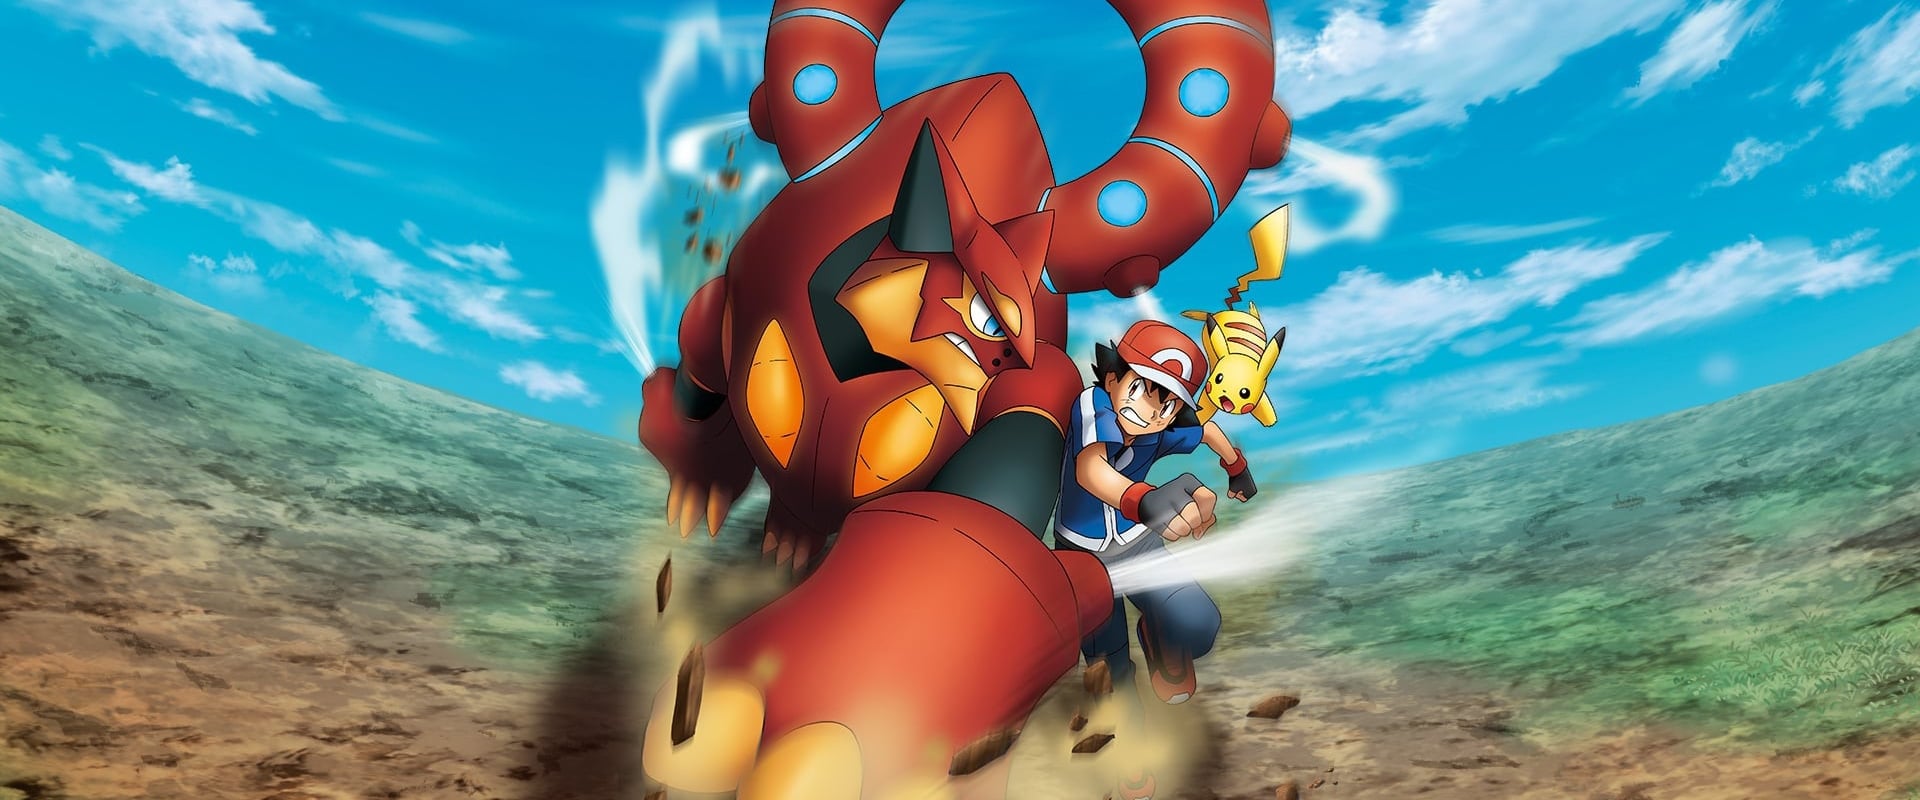 Pokémon - Der Film: Volcanion und das mechanische Wunderwerk